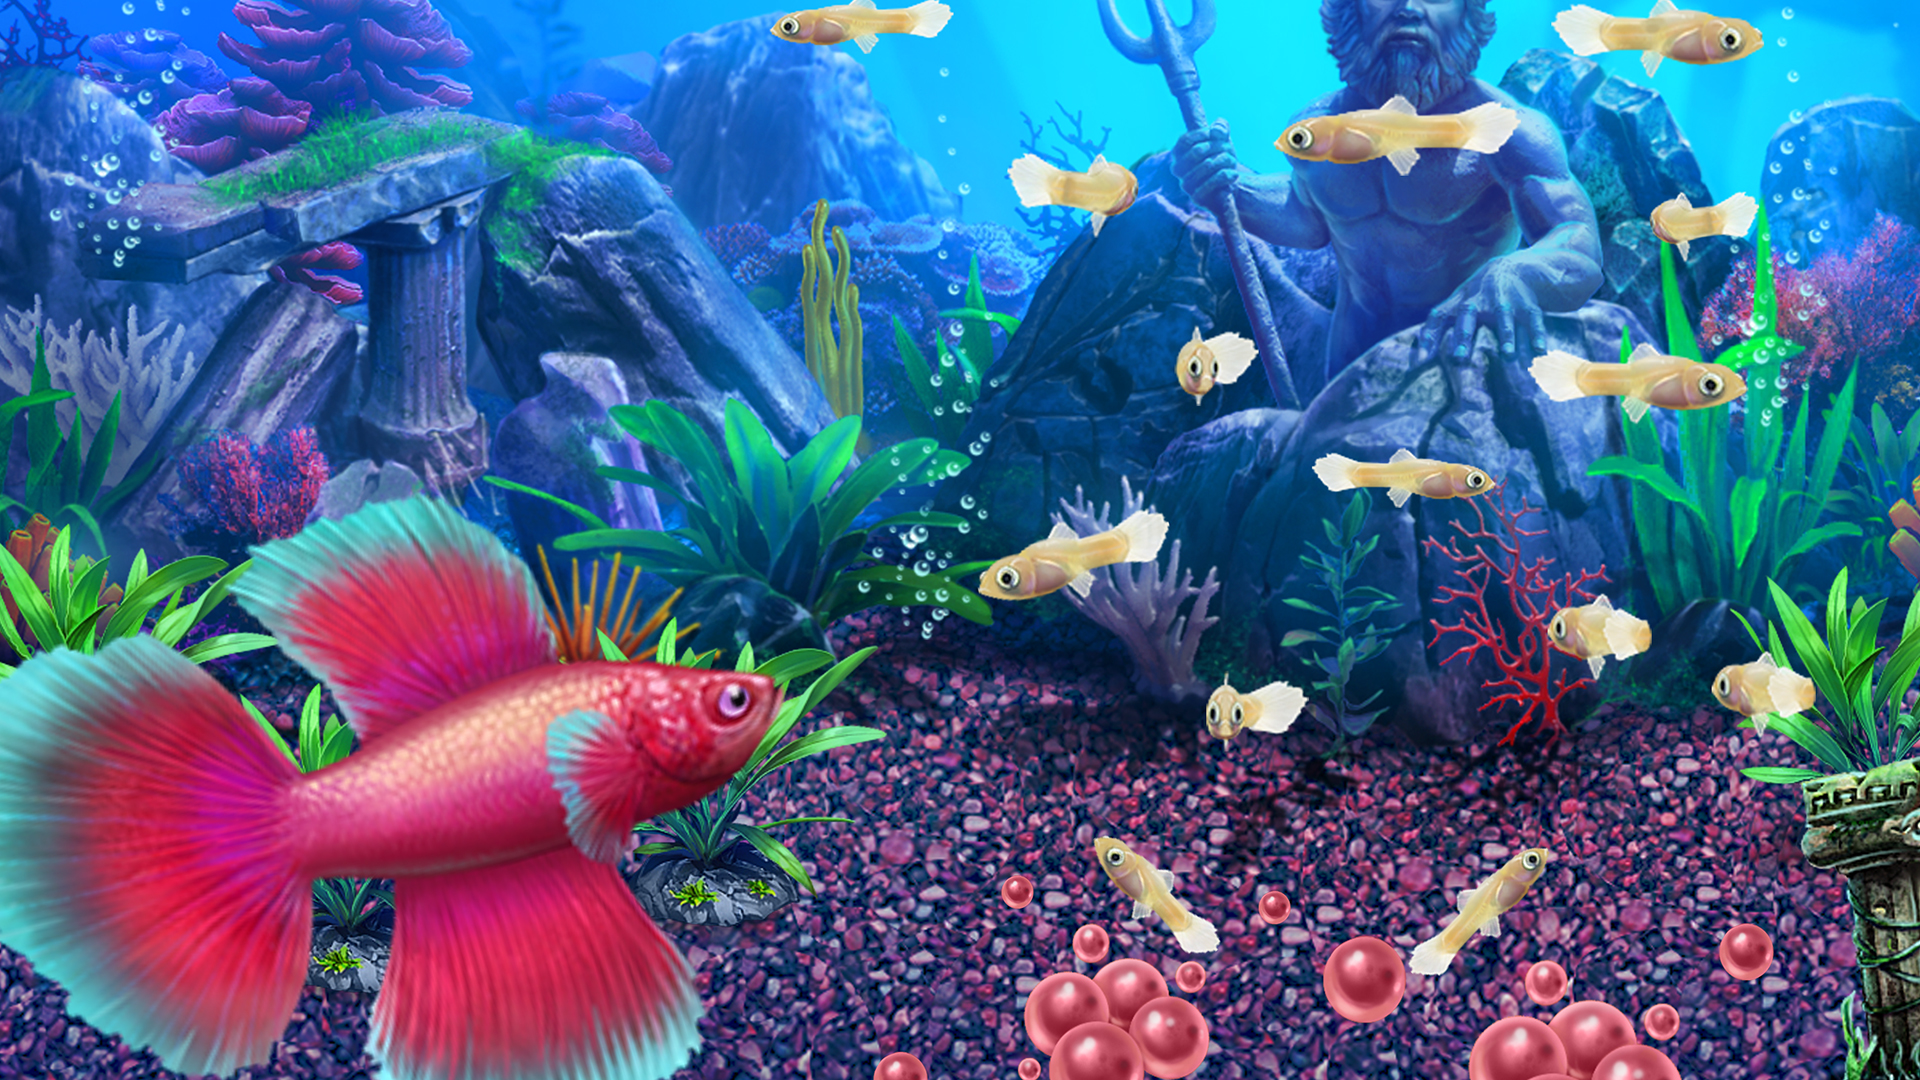 fish tycoon 2 virtual aquarium magic fish